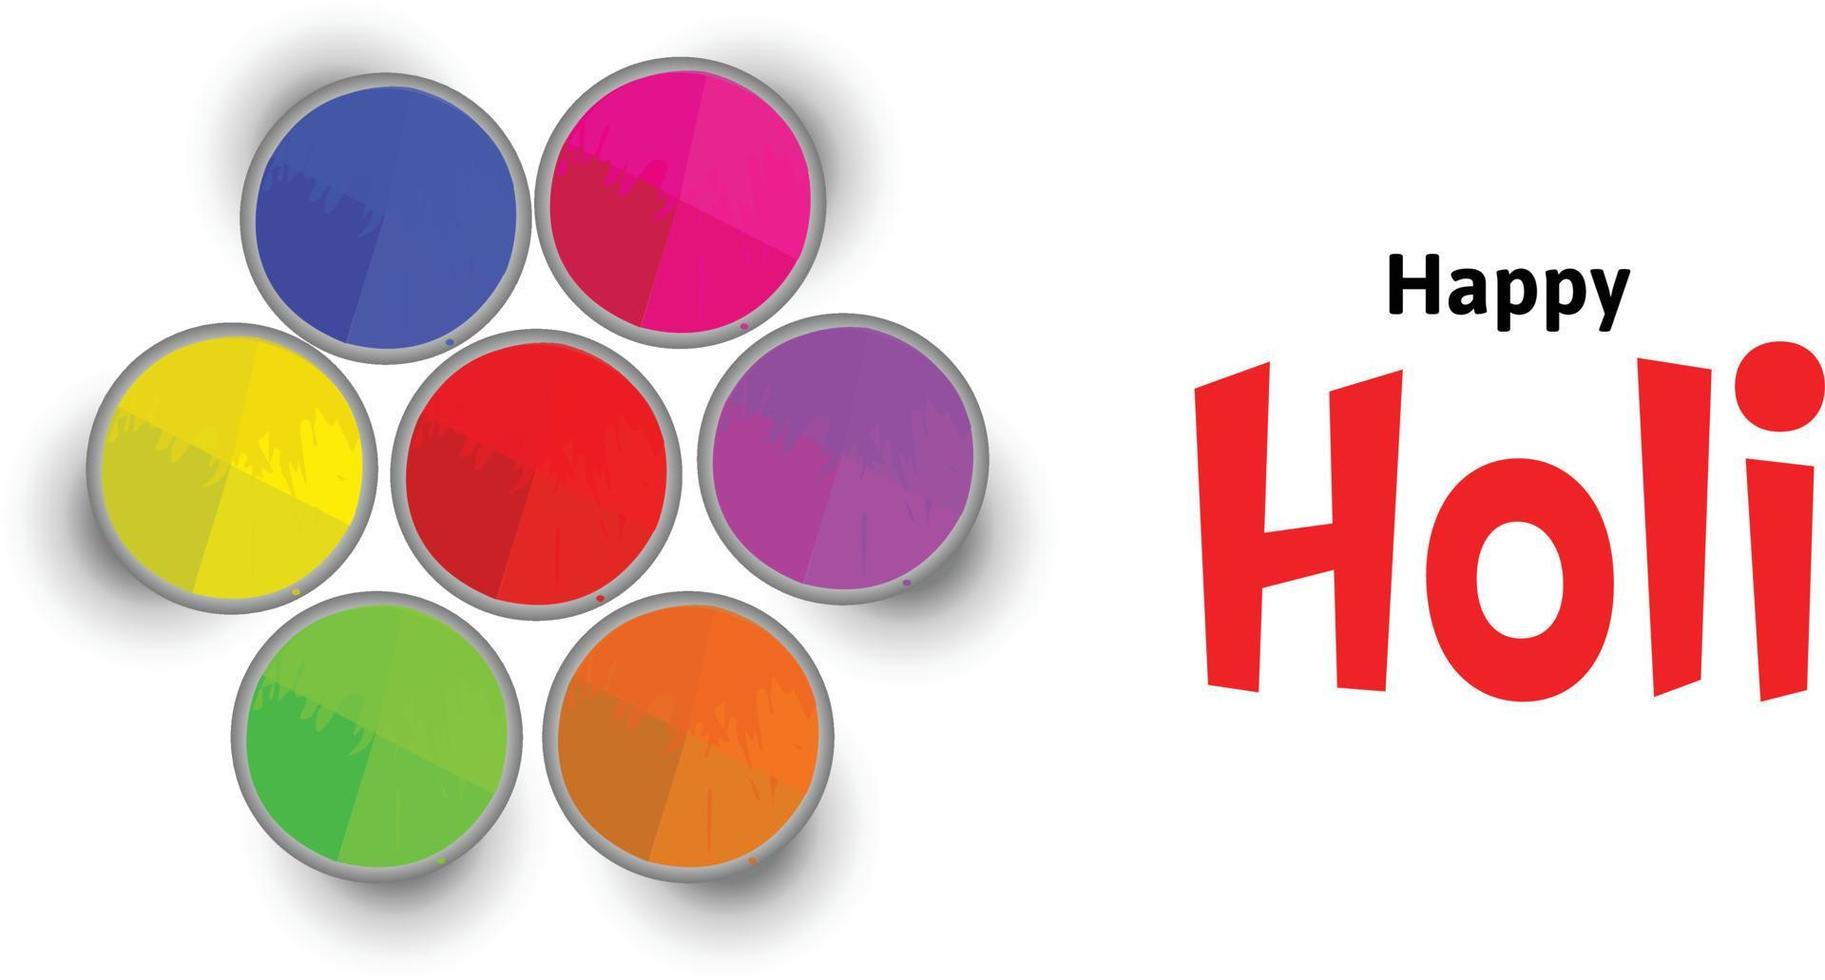 gelukkig holi festival van kleuren Indisch festival viering vector illustraties